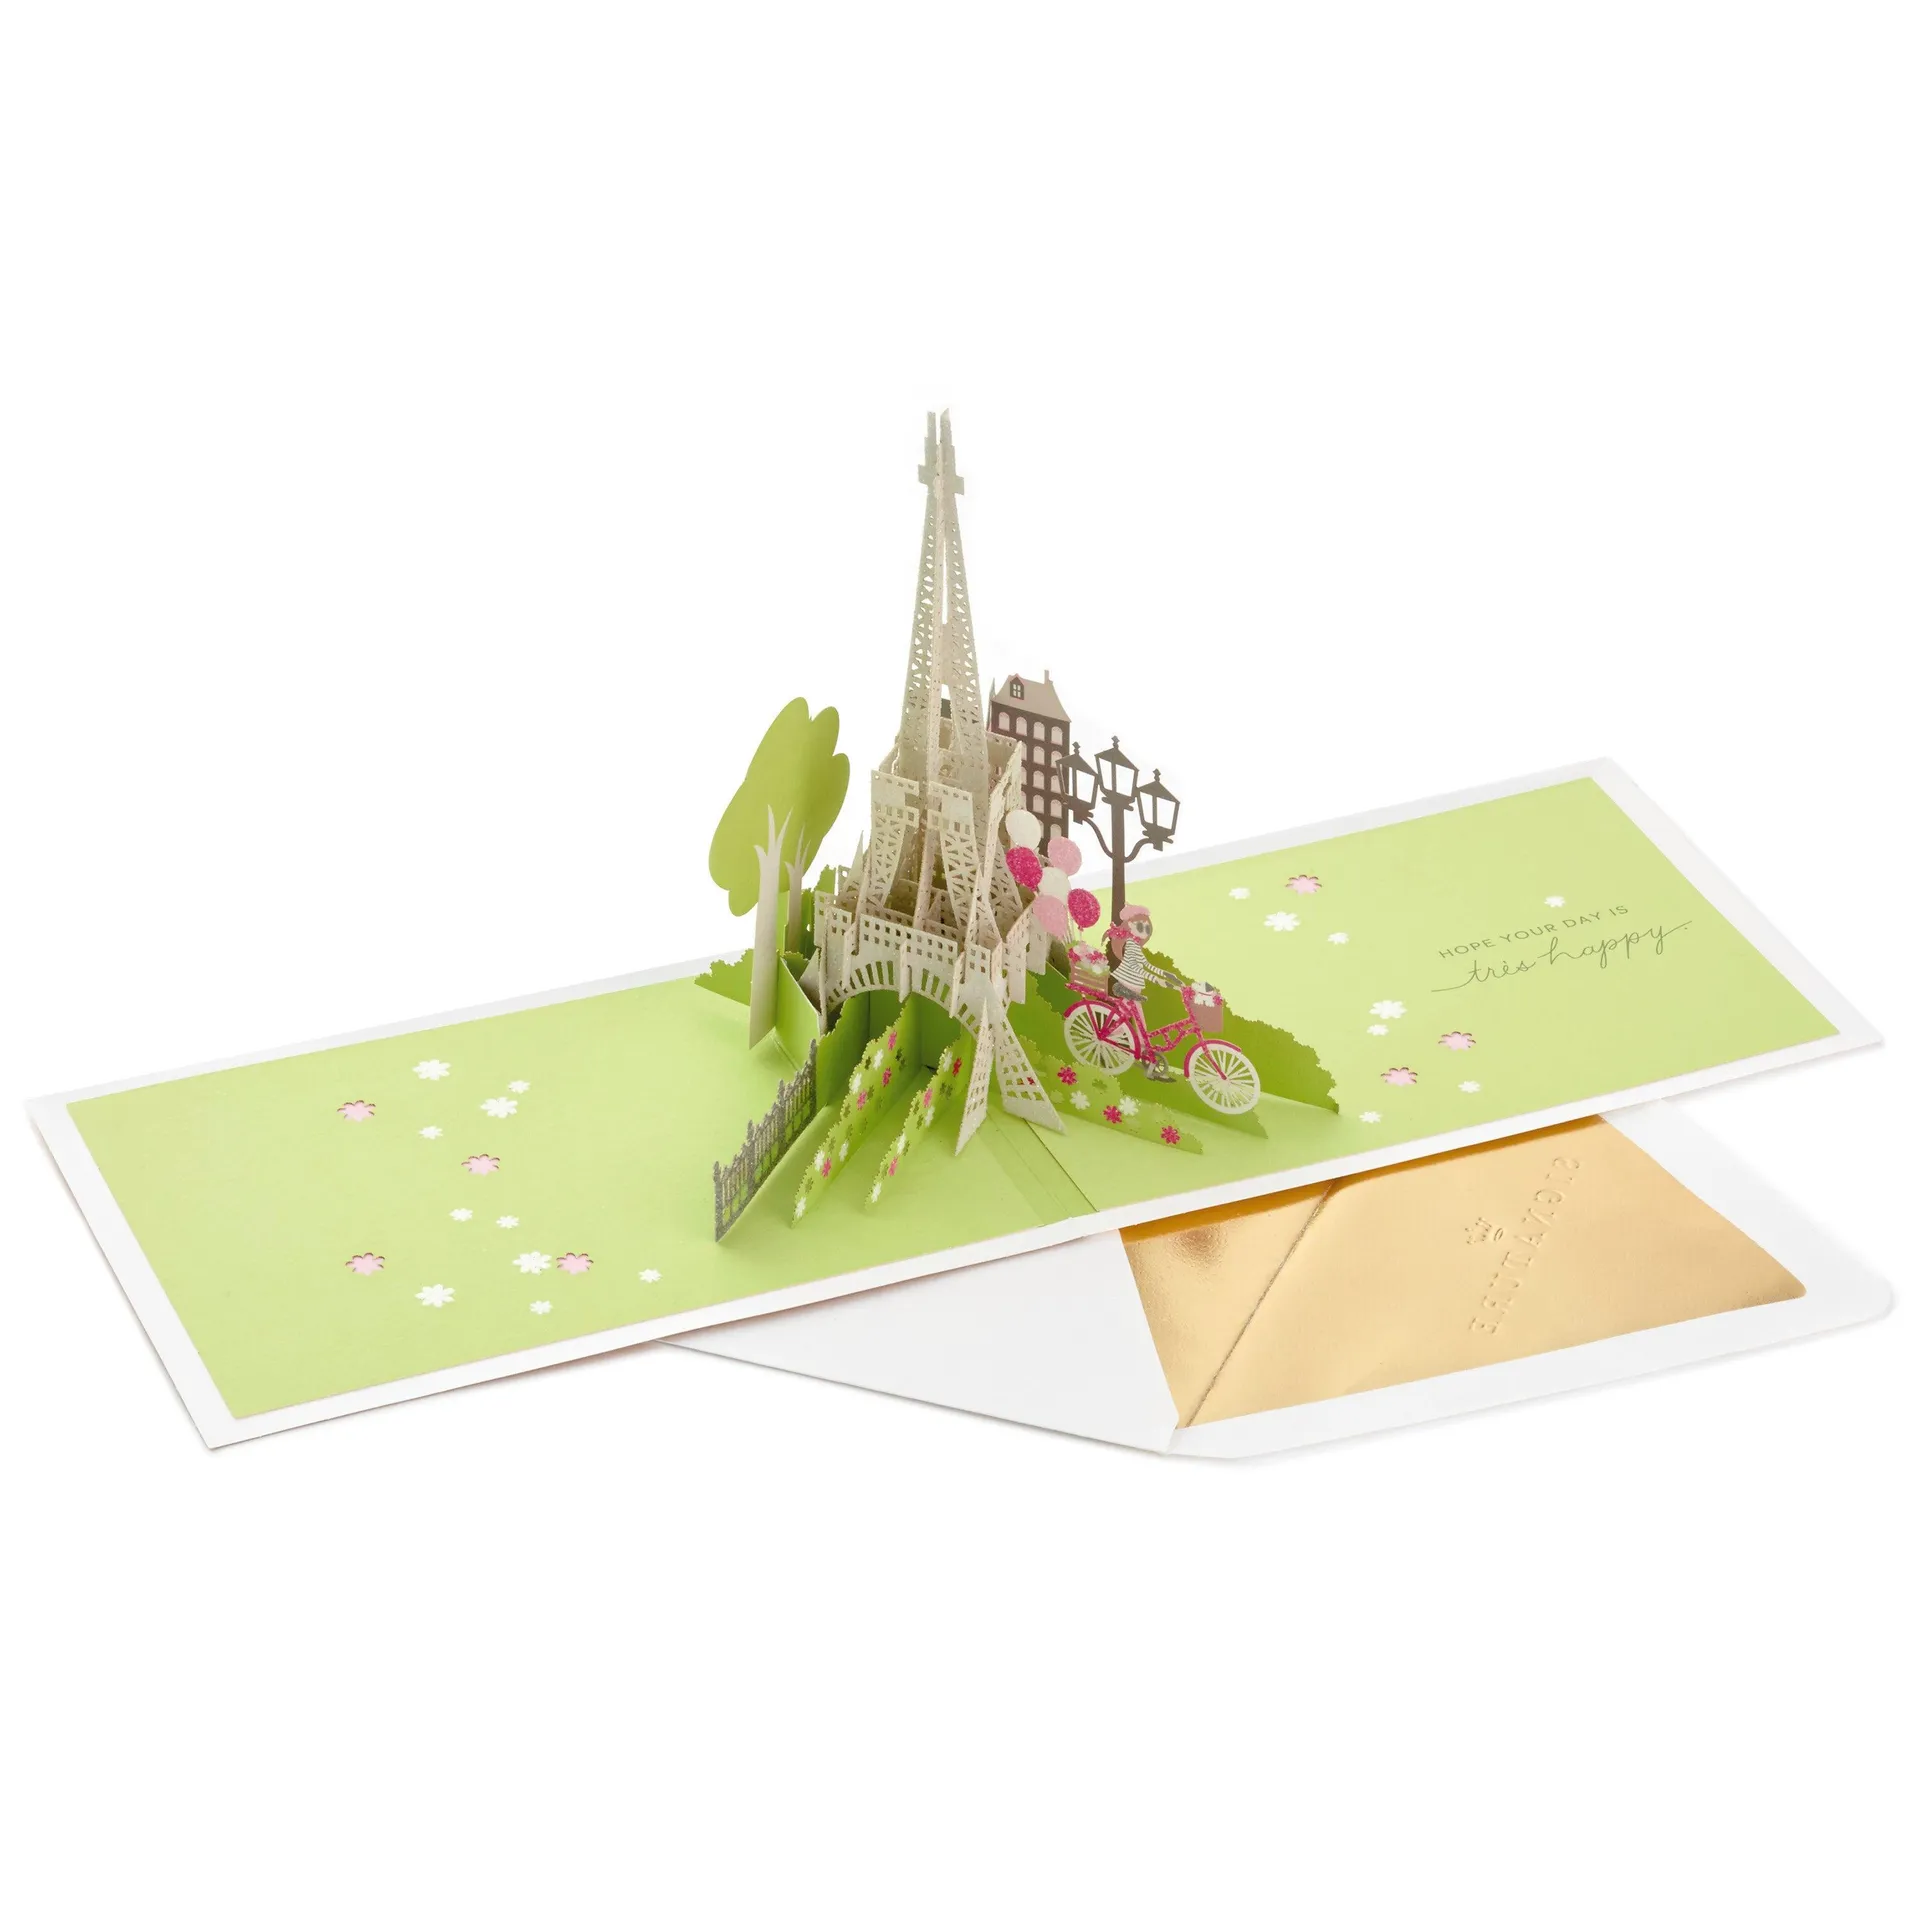 Bonjour Eiffel Tower 3D Pop-Up Hello Card